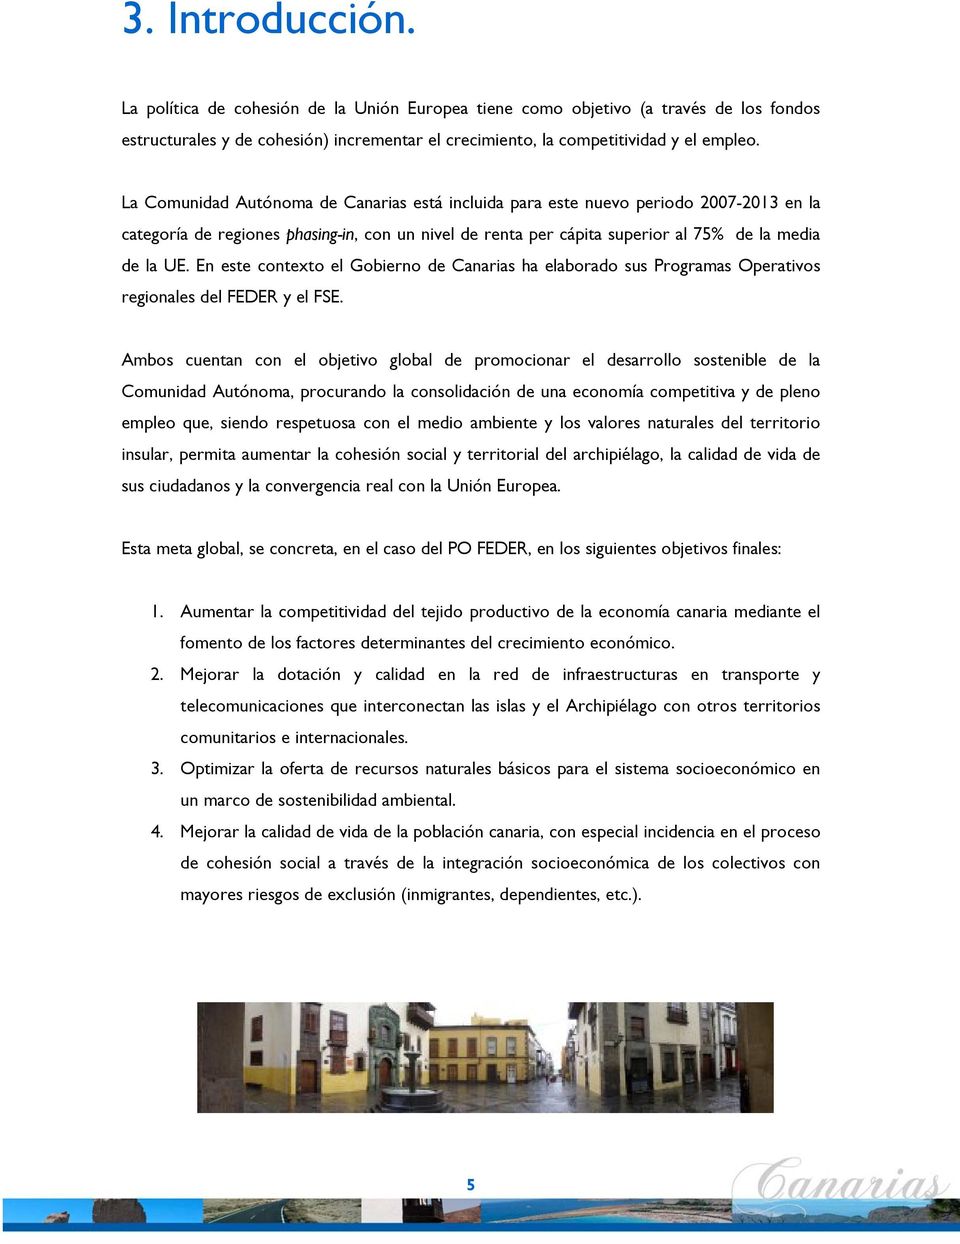 En este contexto el Gobierno de Canarias ha elaborado sus Programas Operativos regionales del FEDER y el FSE.